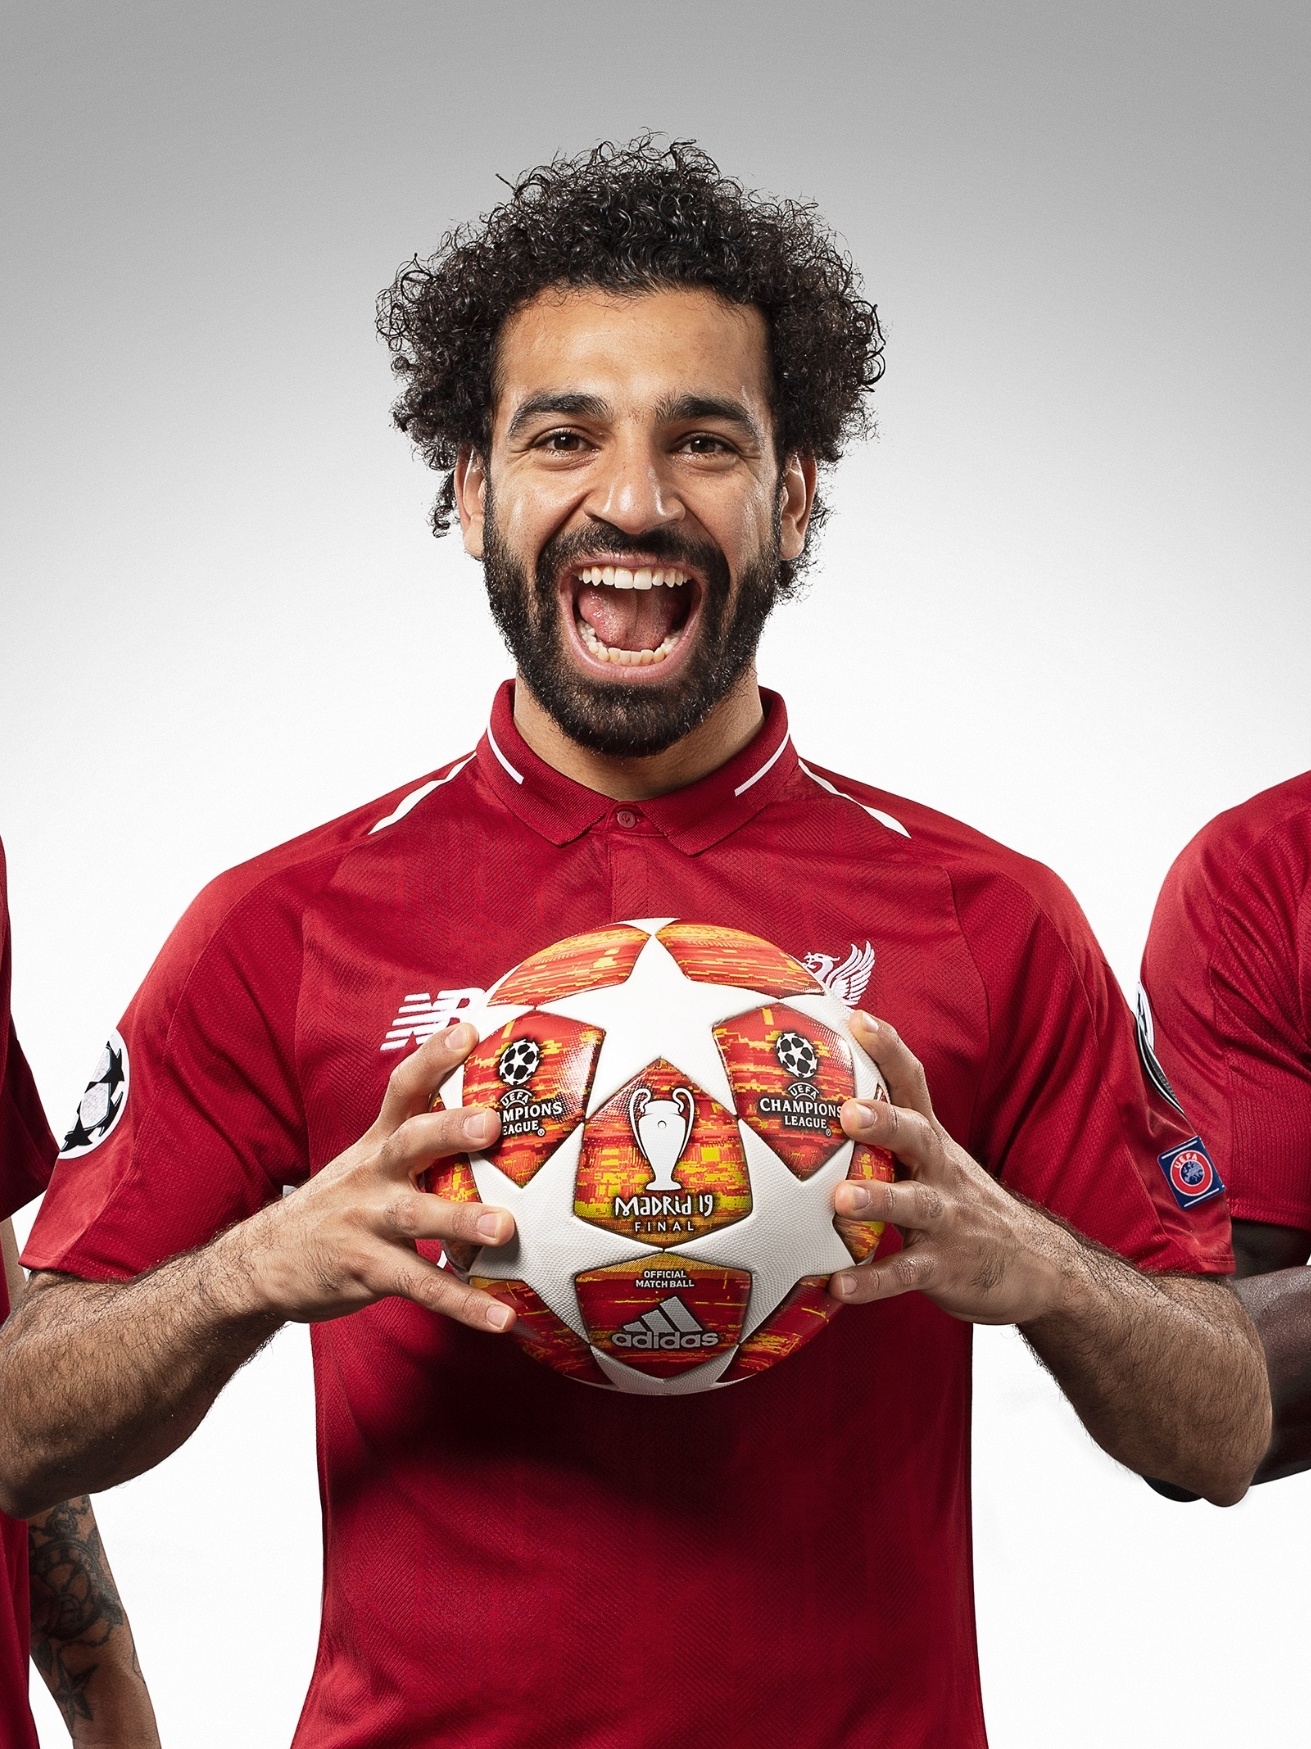 Salah e Mané buscam fim de jejum para tirar Liverpool de pior